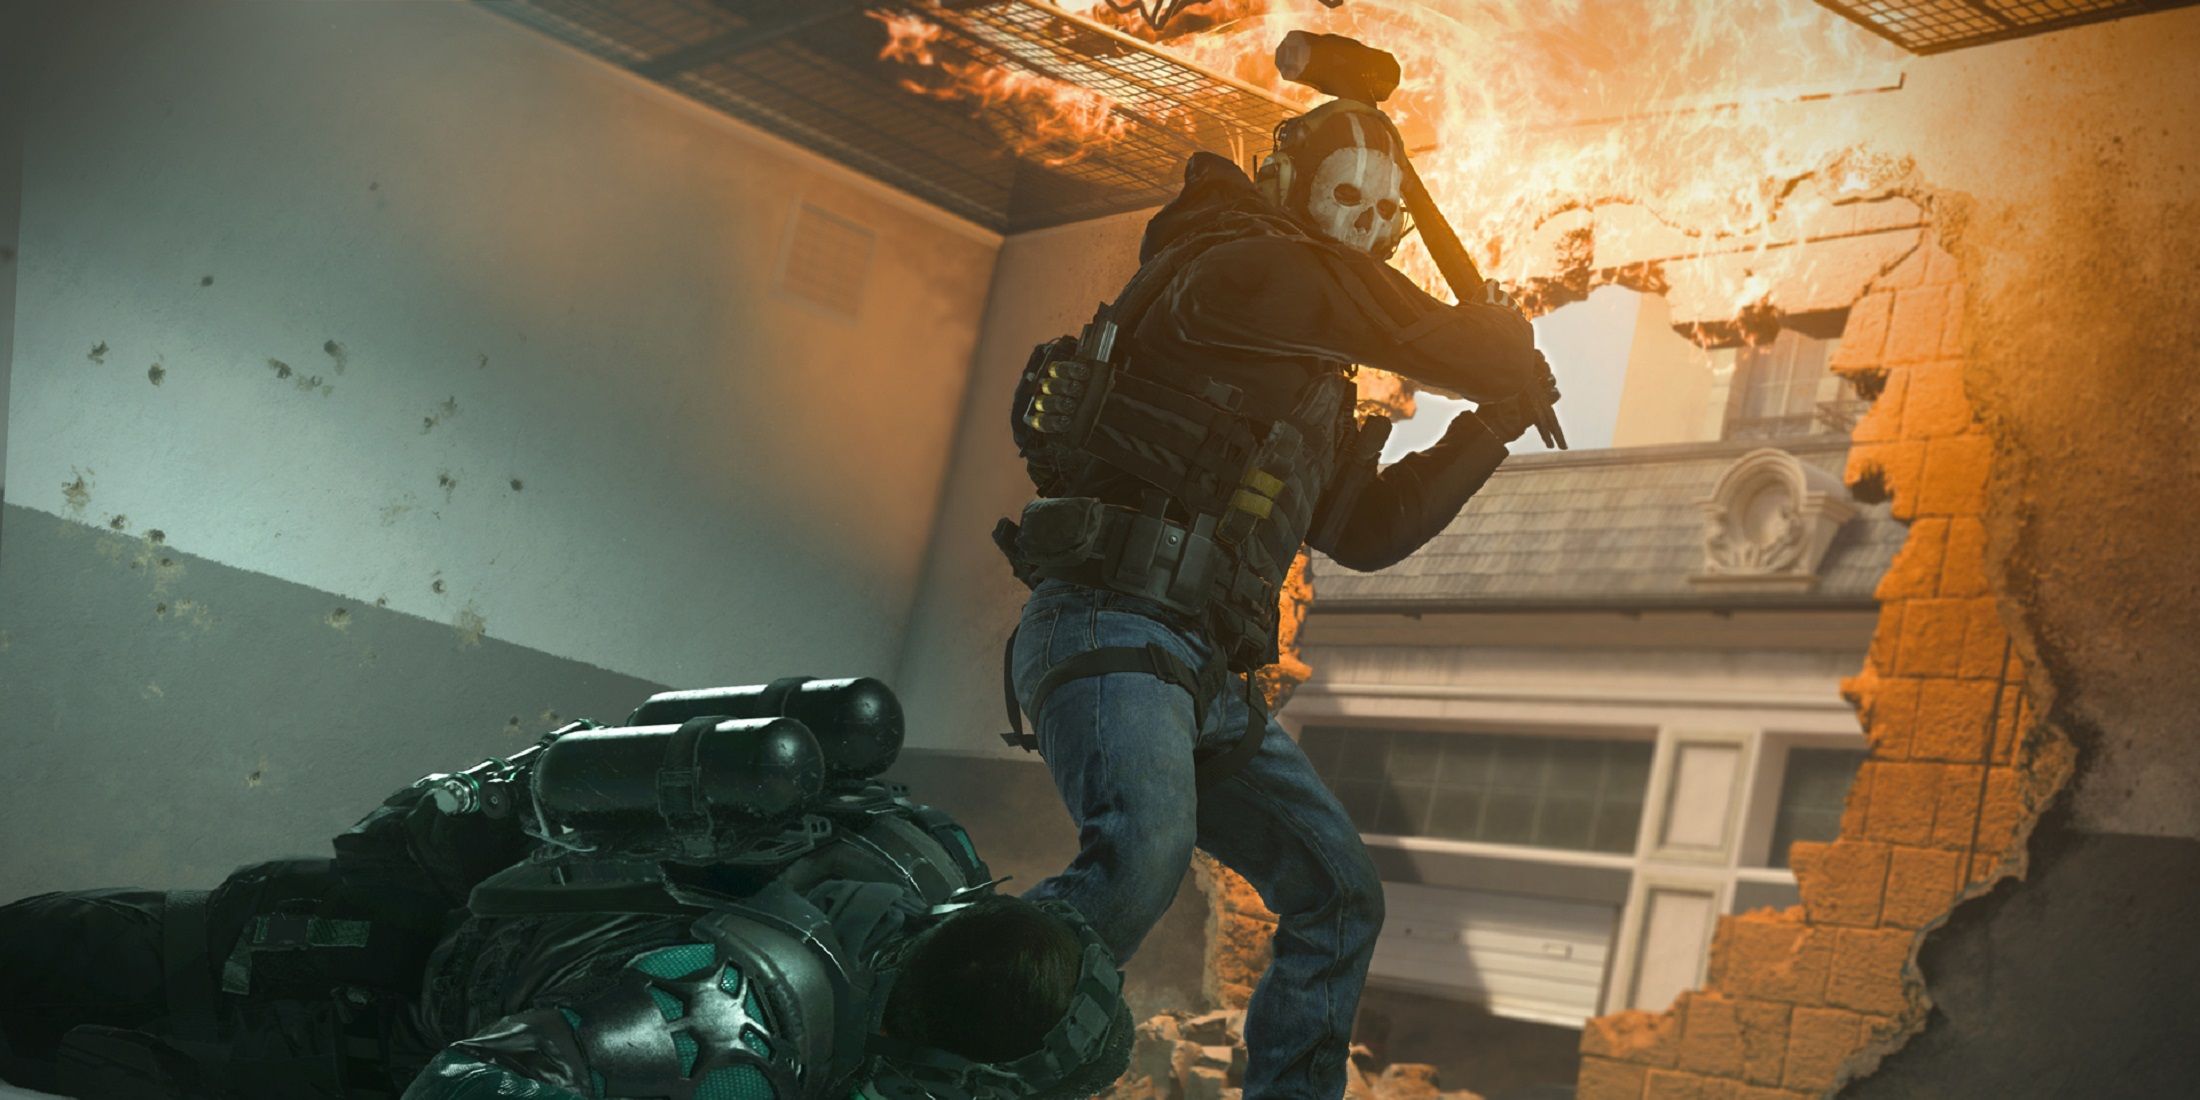 Sledgehammer in Call of Duty Modern Warfare 3 has a hidden trait that unlocks in Zombies mode.